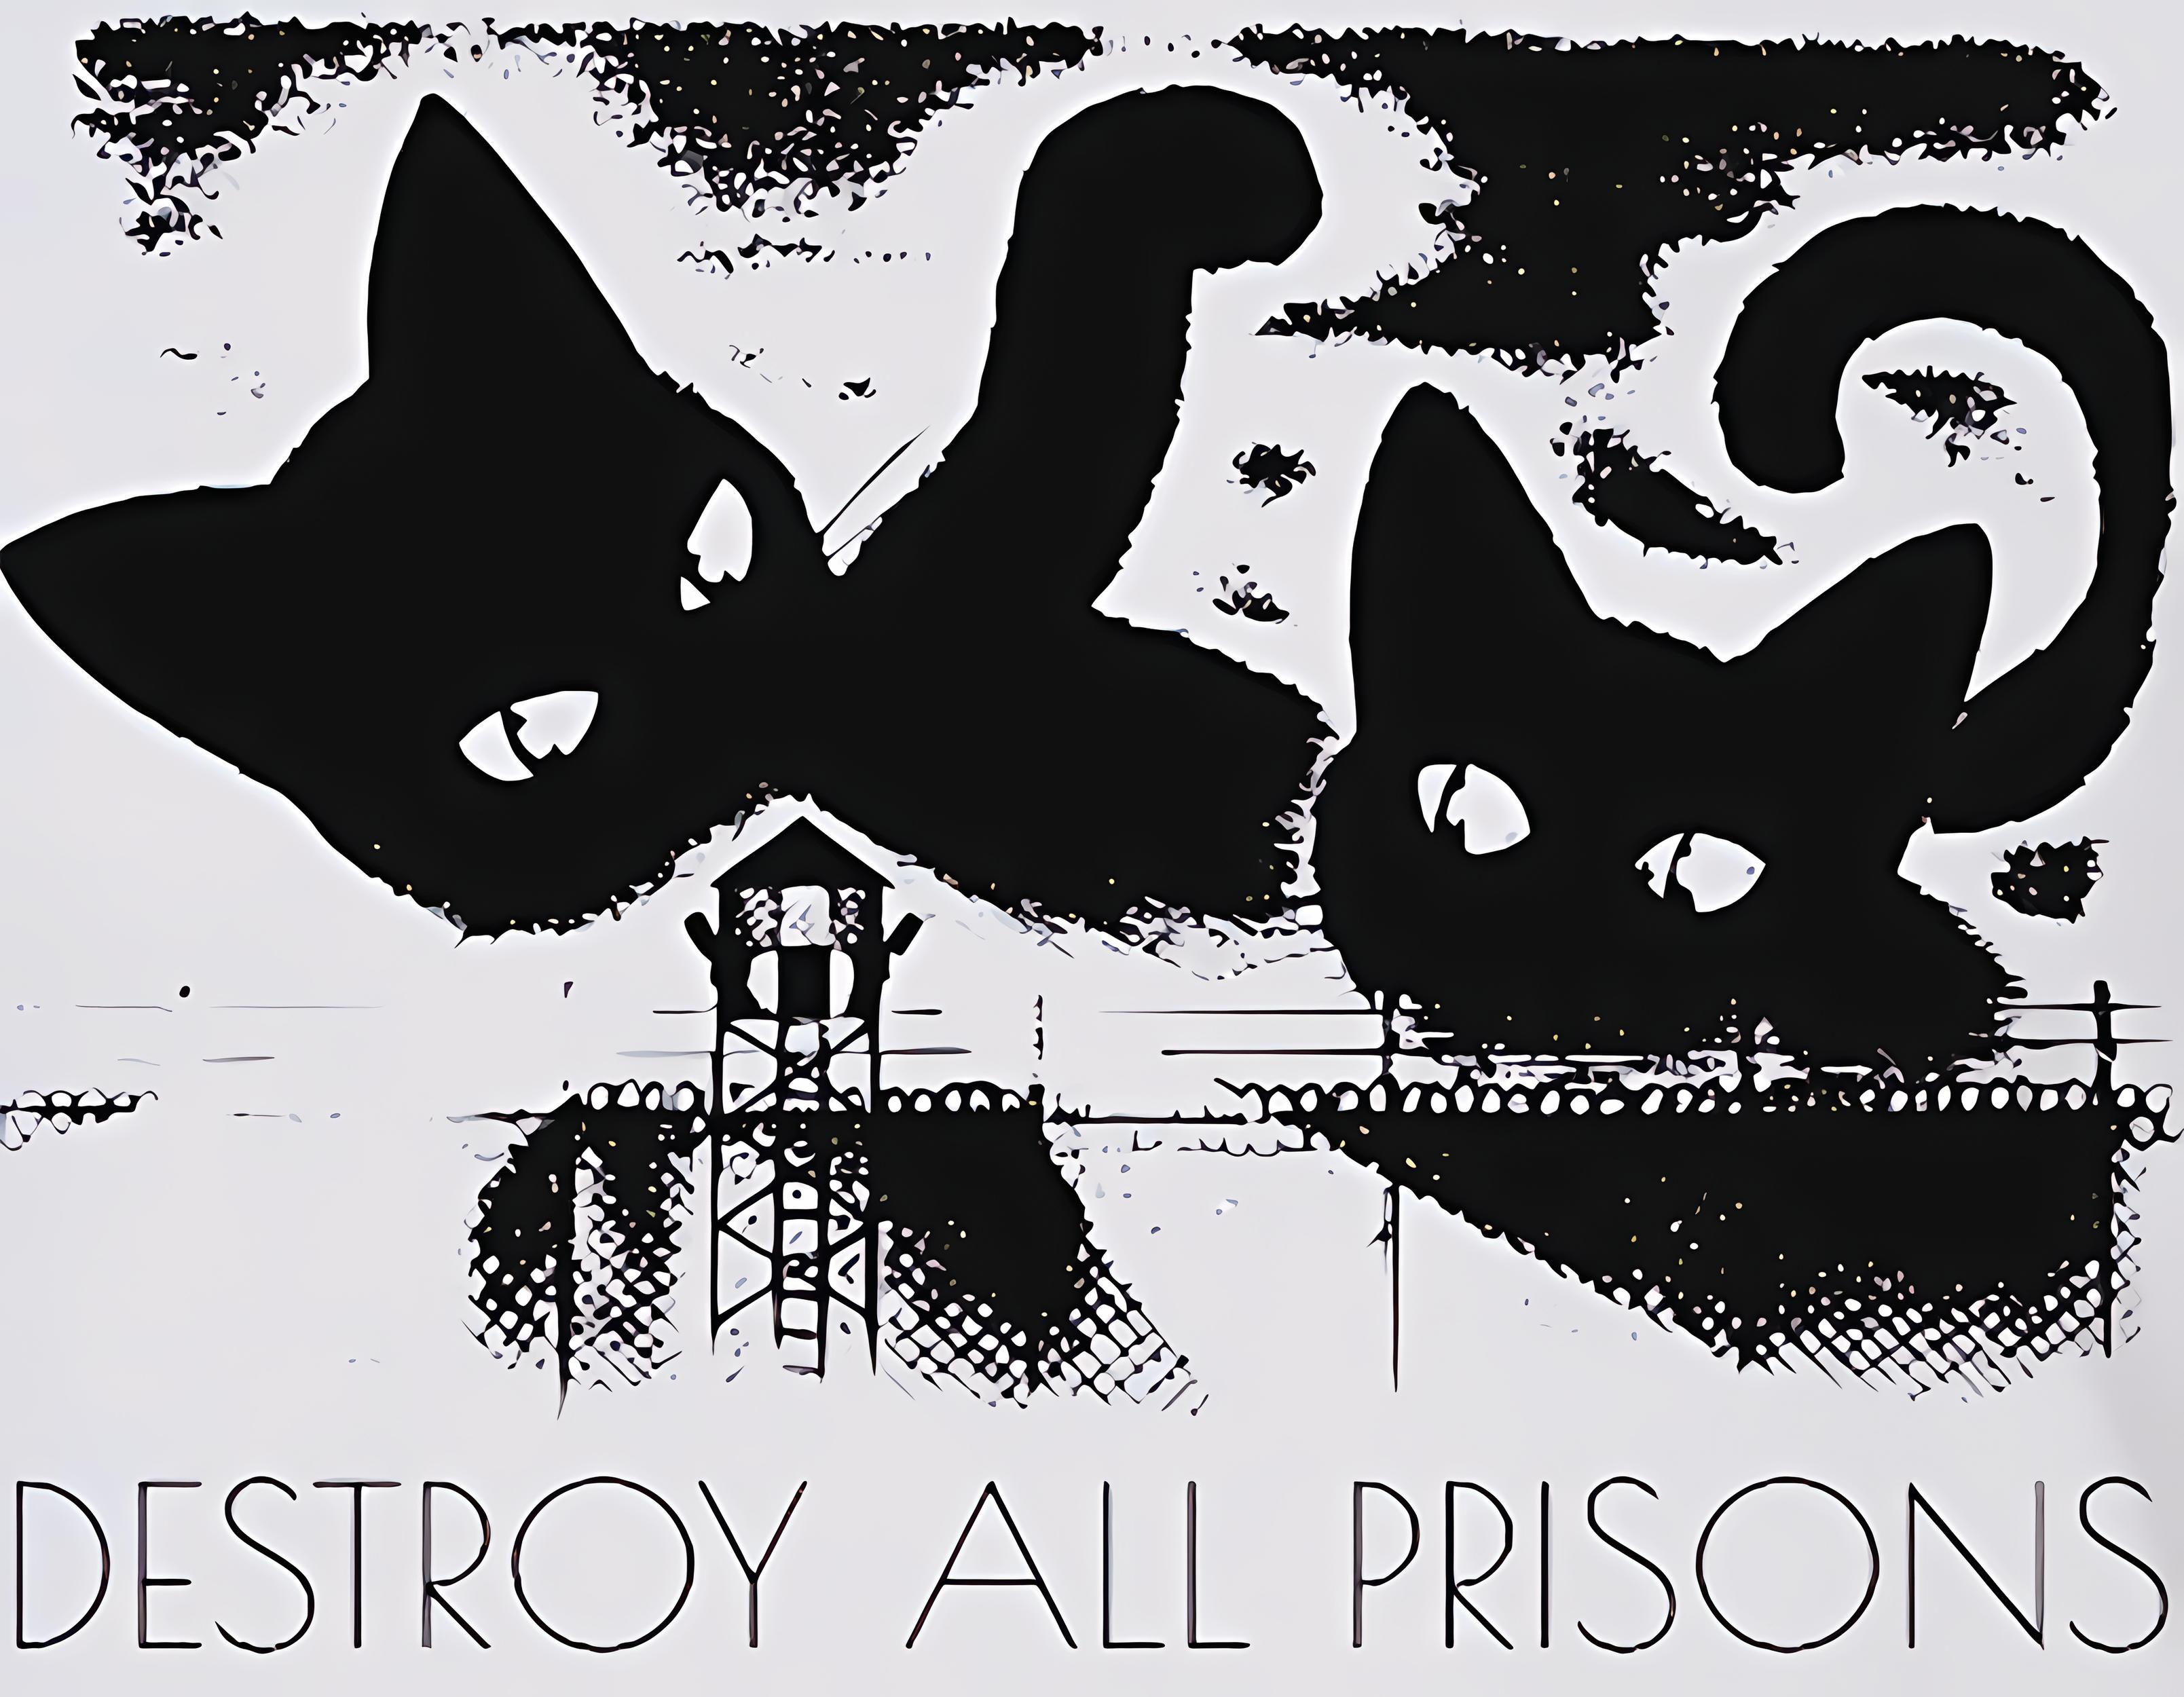 Zwei große Katzen, die dabei sind, auf eine kleine Gefängnismauer zu schlagen. Darunter steht Destroy All Prisons.